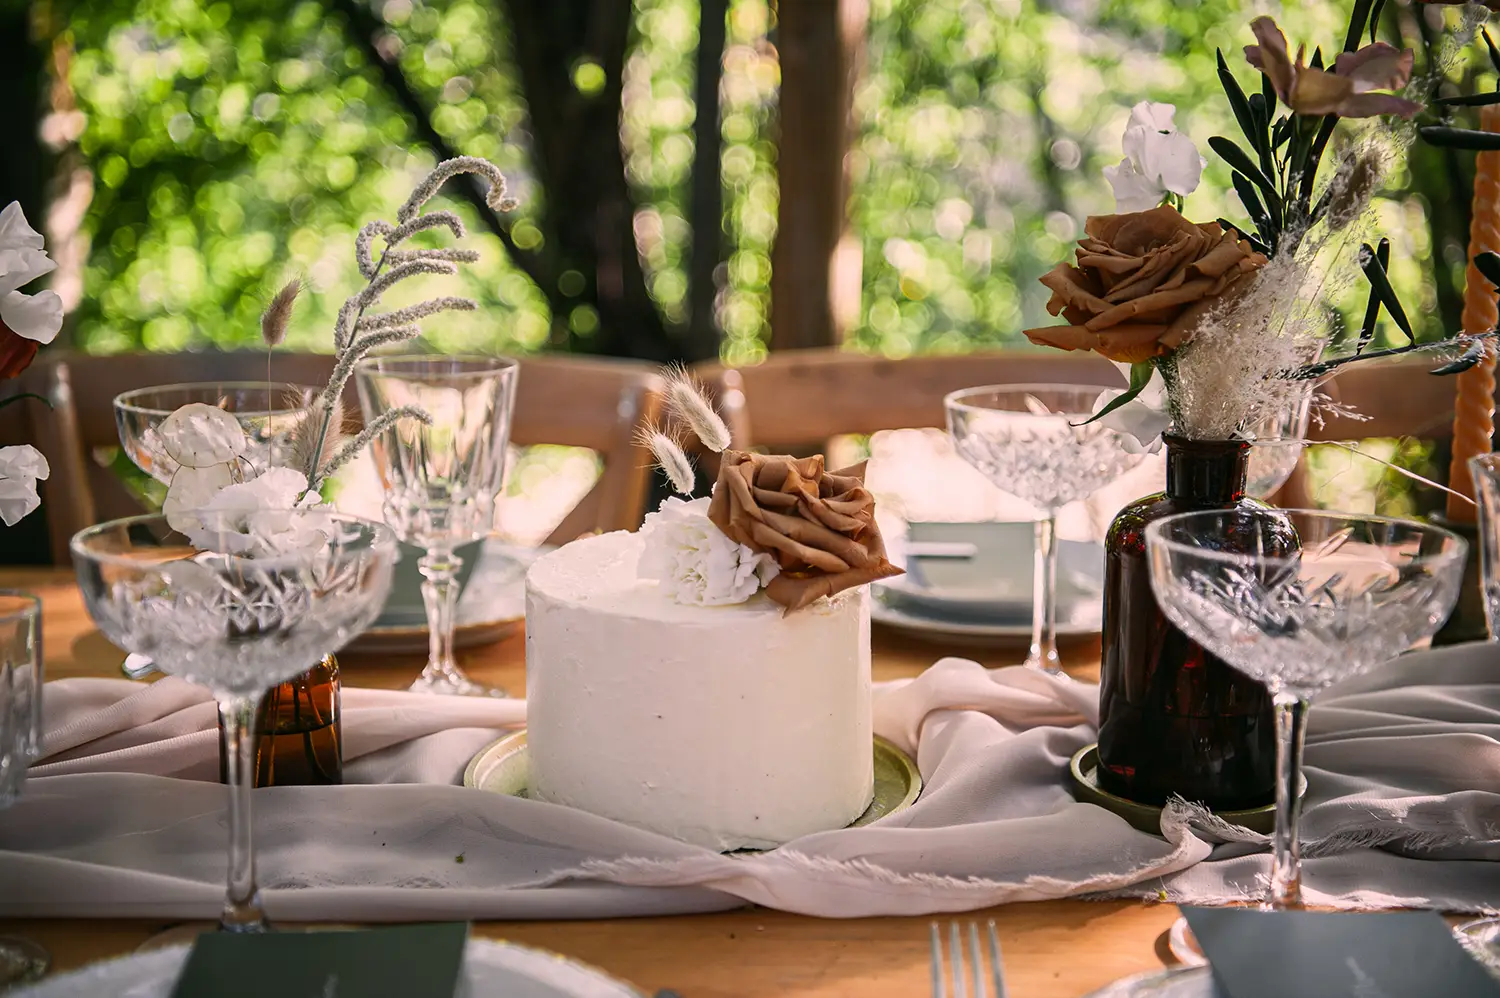 Wedding cake gateau de mariage bohème provençal sur la table des mariés avec une décoration champetre